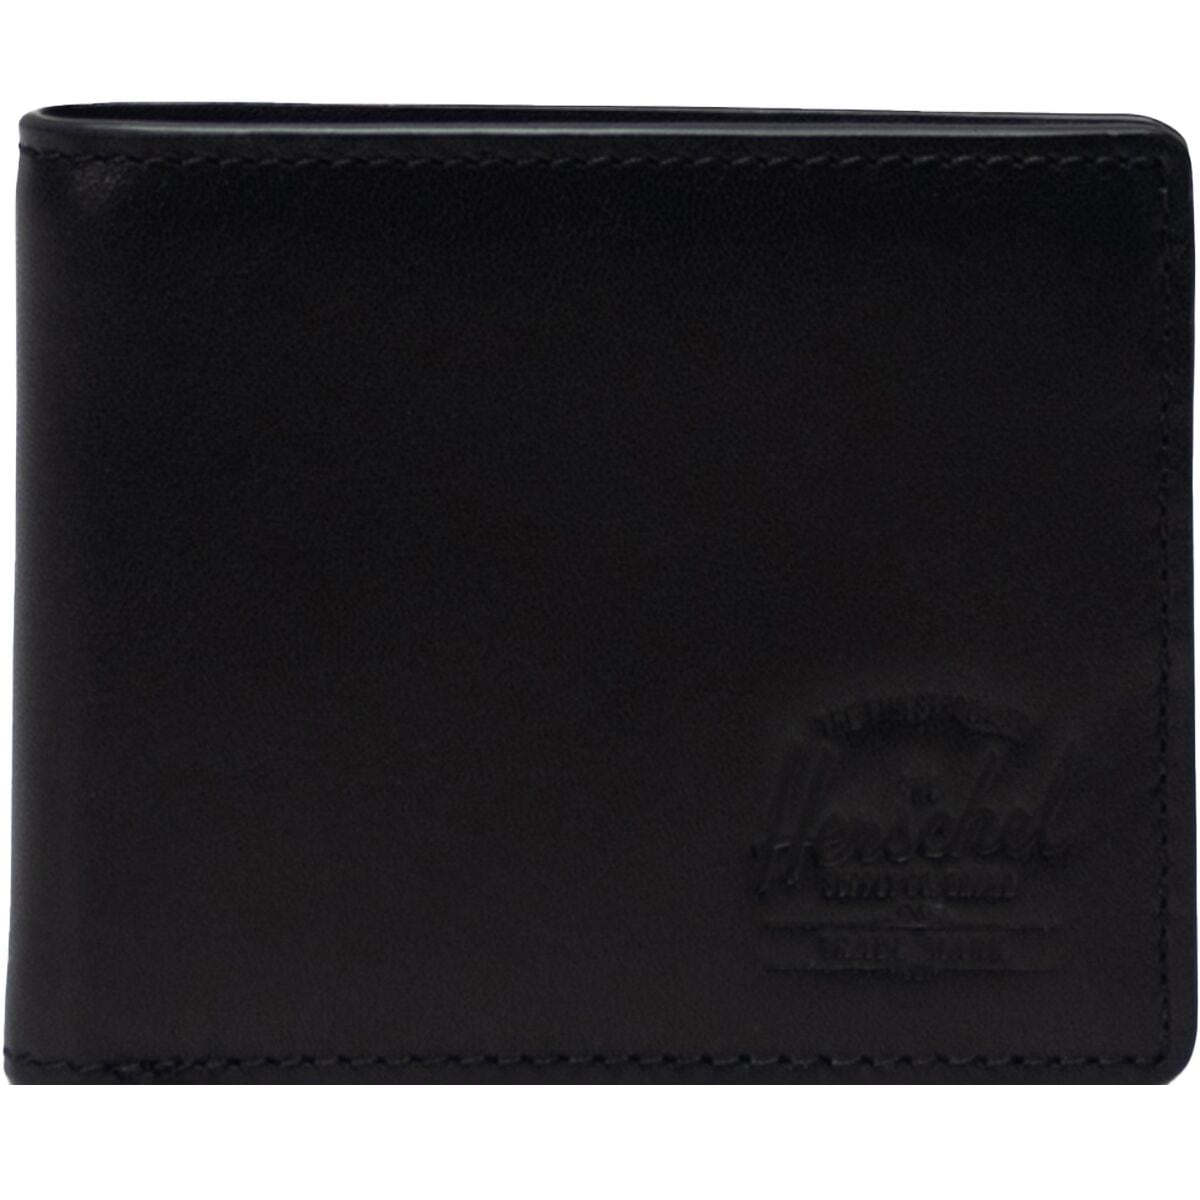 Herschel Supply Hank Leather RFID Wallet